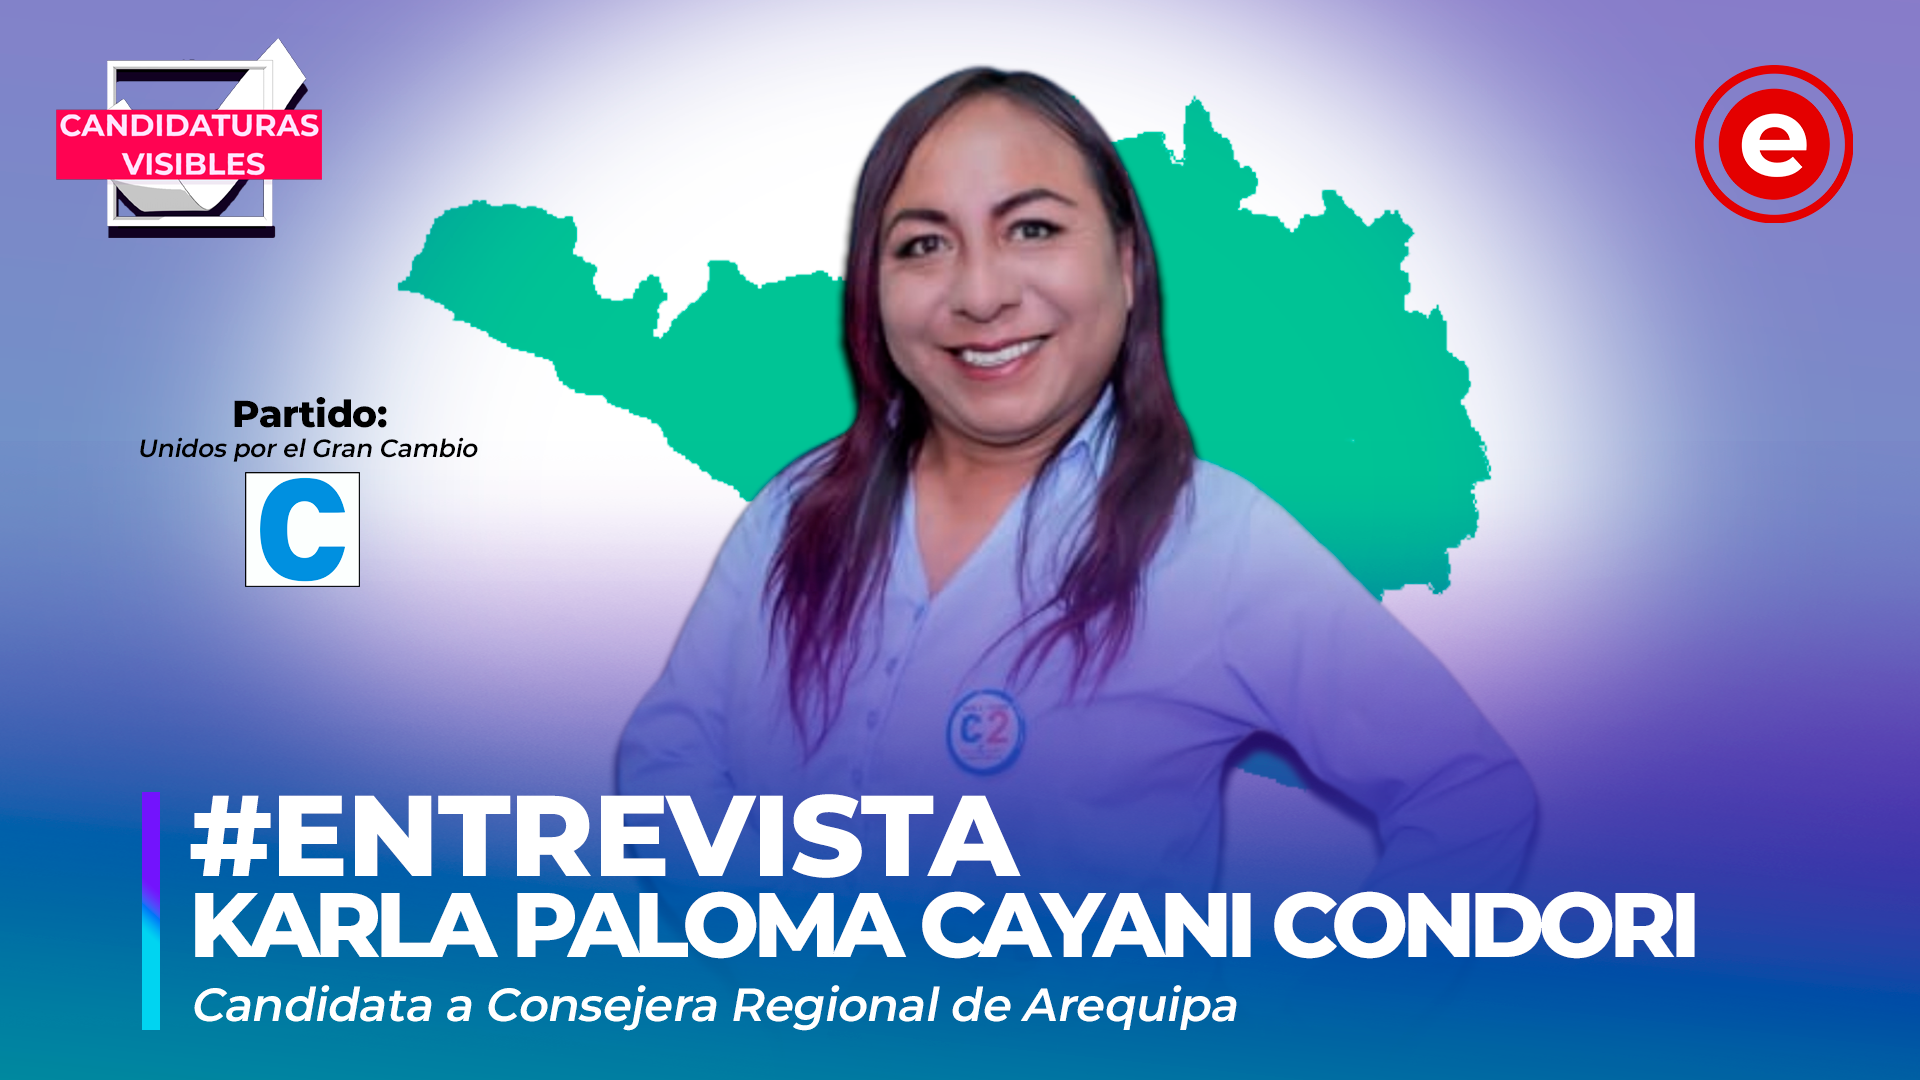 Candidaturas Visibles | Karla Cayani, candidata a consejera regional de Arequipa por Unidos por el Gran Cambio